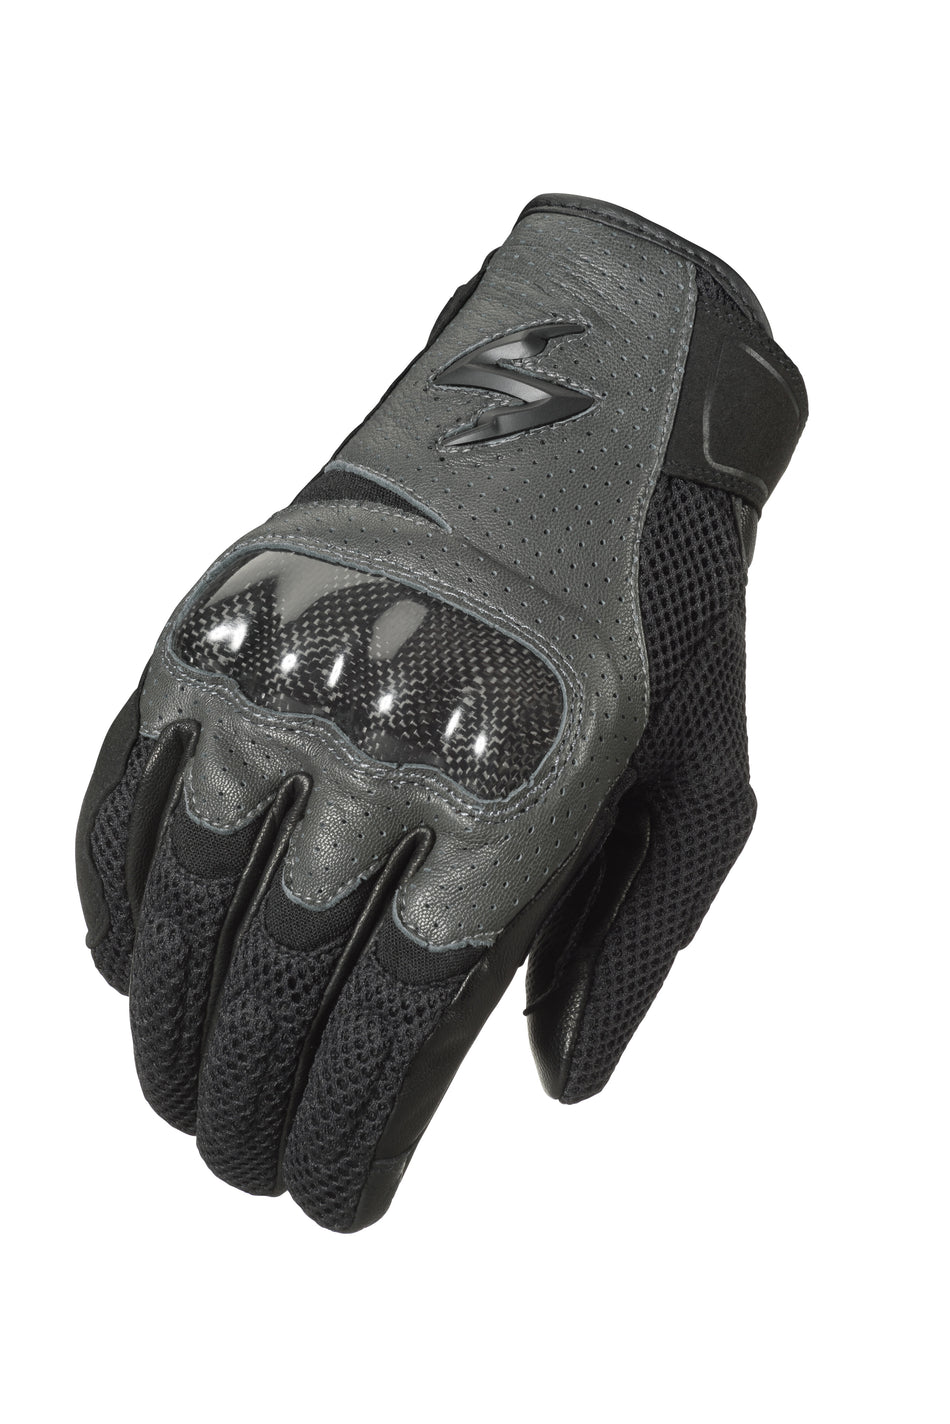 SCORPION EXO Vortex Air Gloves Grey 2x G36-067